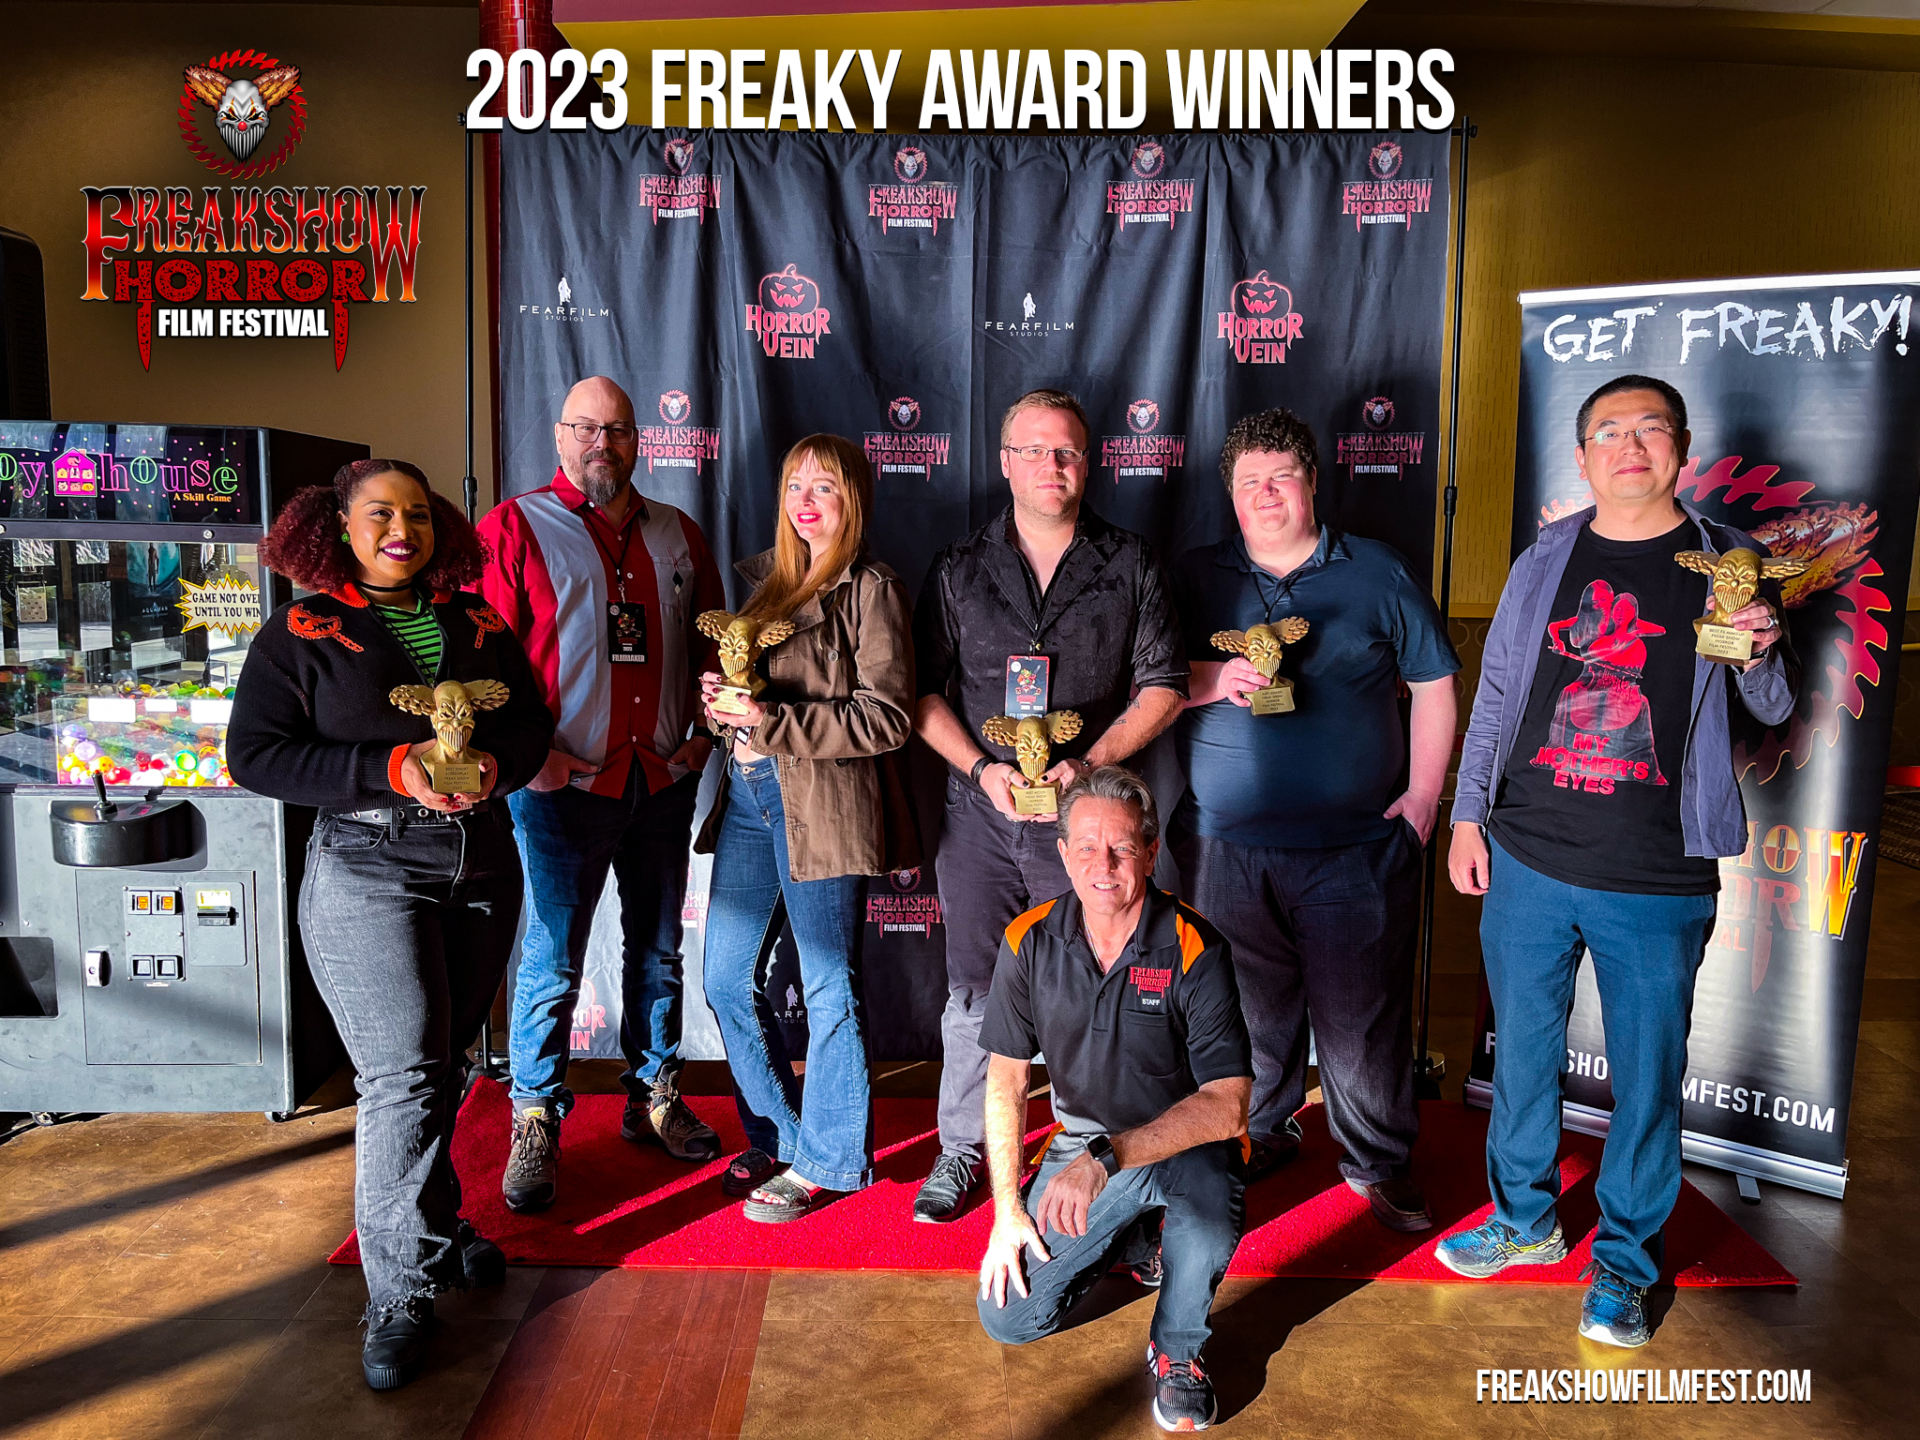 FREAK SHOW Horror Film Festival 2023 FREAKY AWARD Winners